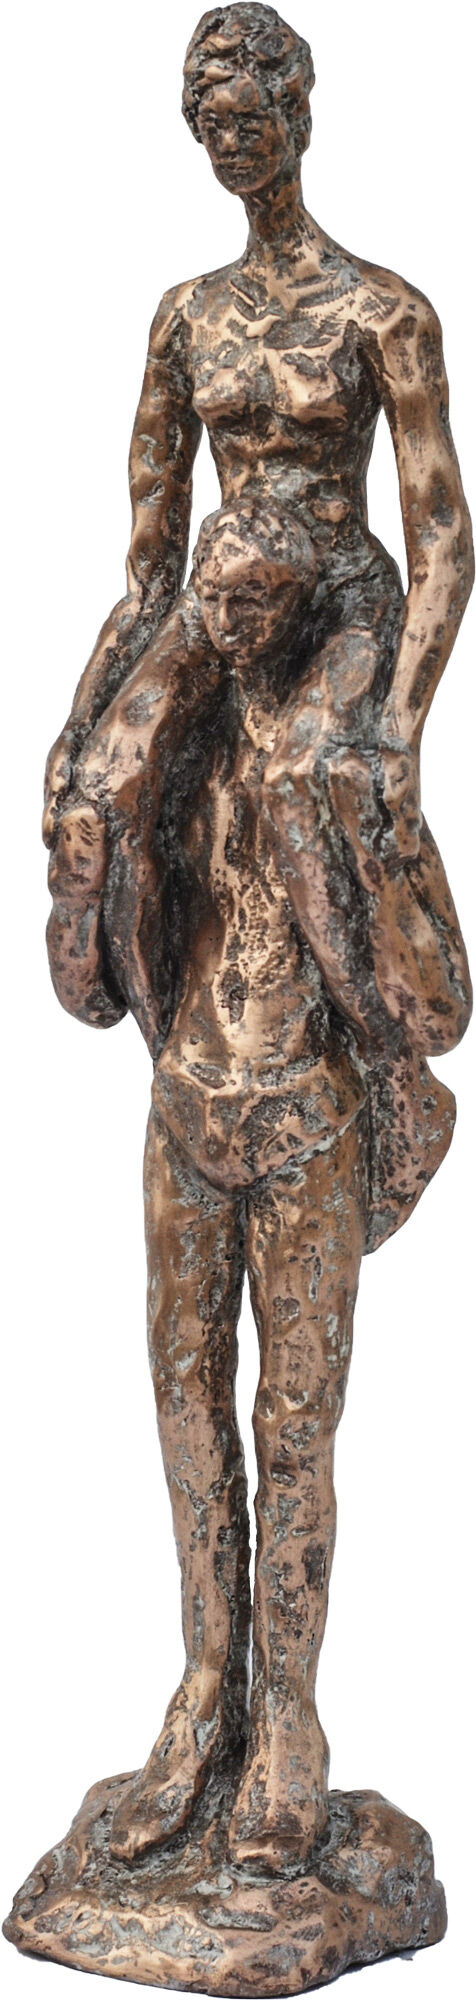 Skulptur "Piggyback" (2017), bronze von Dagmar Vogt